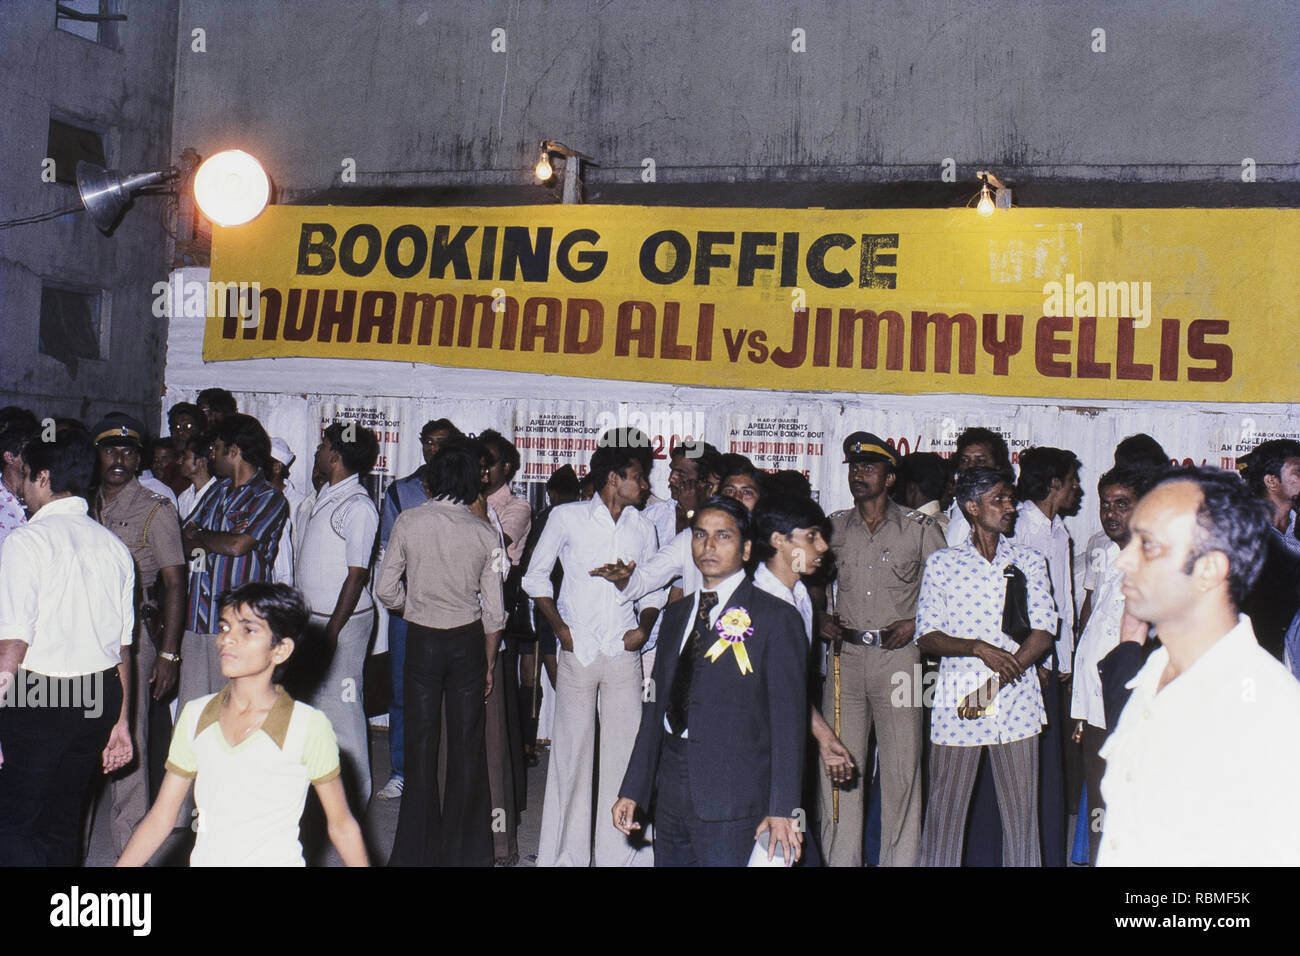 Persone in ufficio Booking Muhammad Ali vs Jimmy Ellis, India, Asia Foto Stock